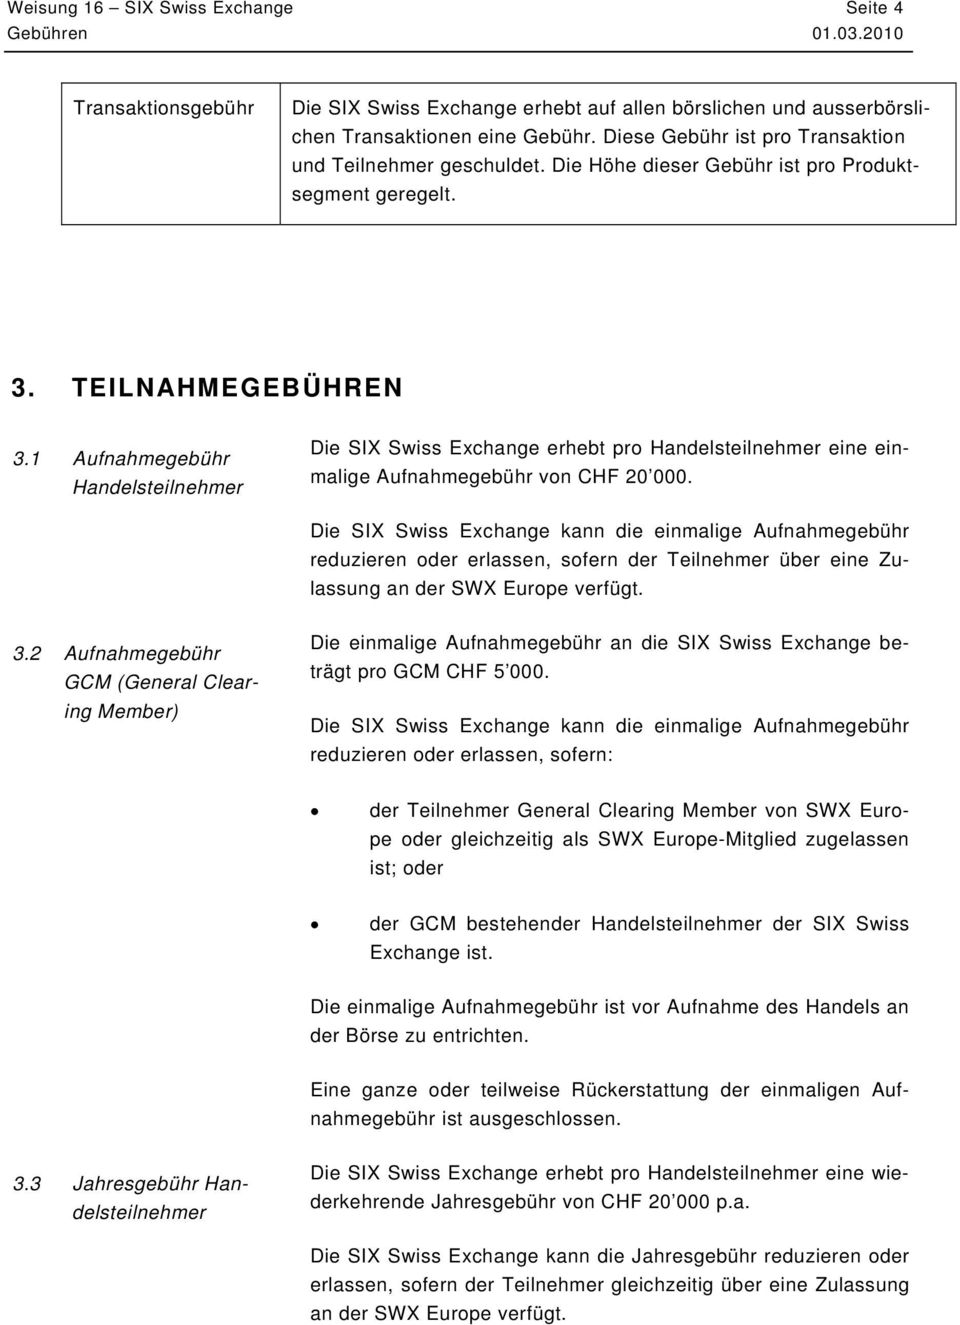 1 Aufnahmegebühr Handelsteilnehmer Die SIX Swiss Exchange erhebt pro Handelsteilnehmer eine einmalige Aufnahmegebühr von CHF 20 000.